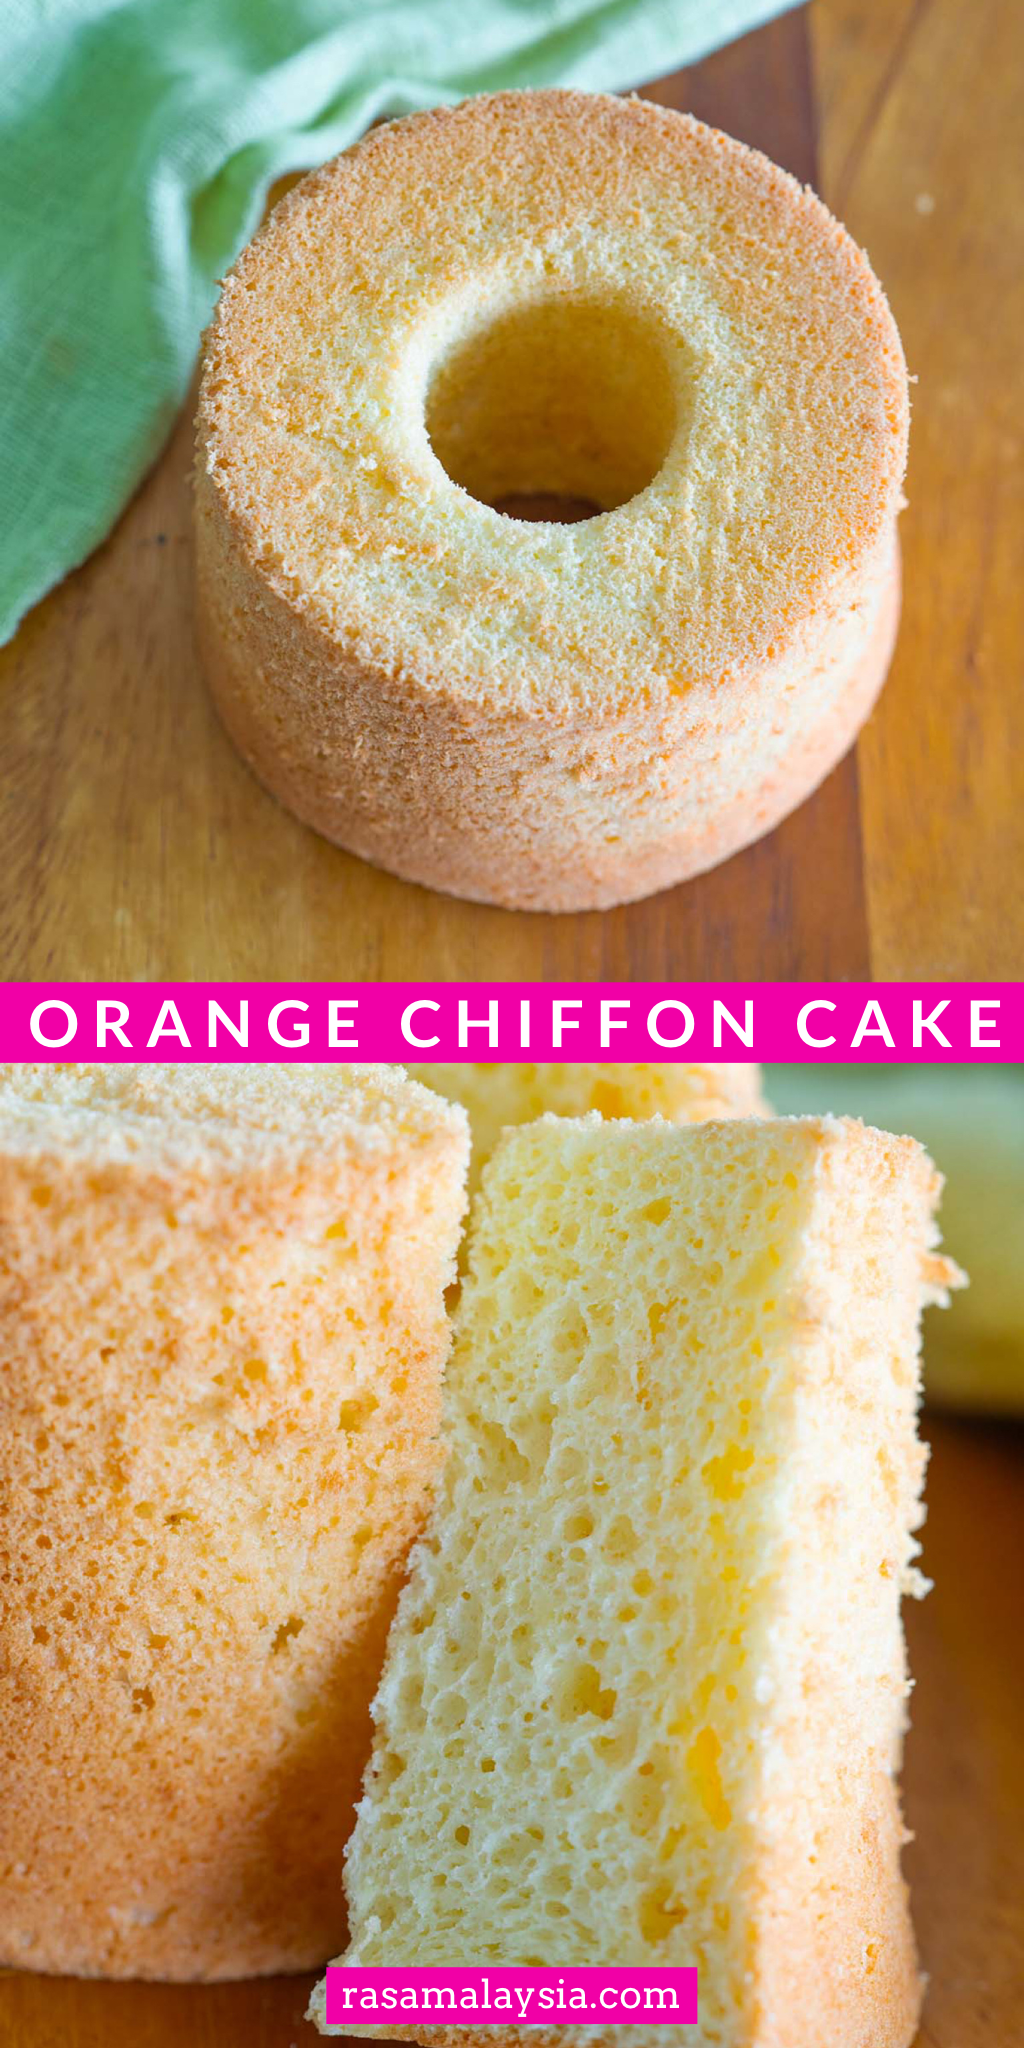 Orange chiffon cake made with orange, eggs & flour. Orange chiffon cake is soft and tasty with orange flavor. Easy orange chiffon cake recipe.